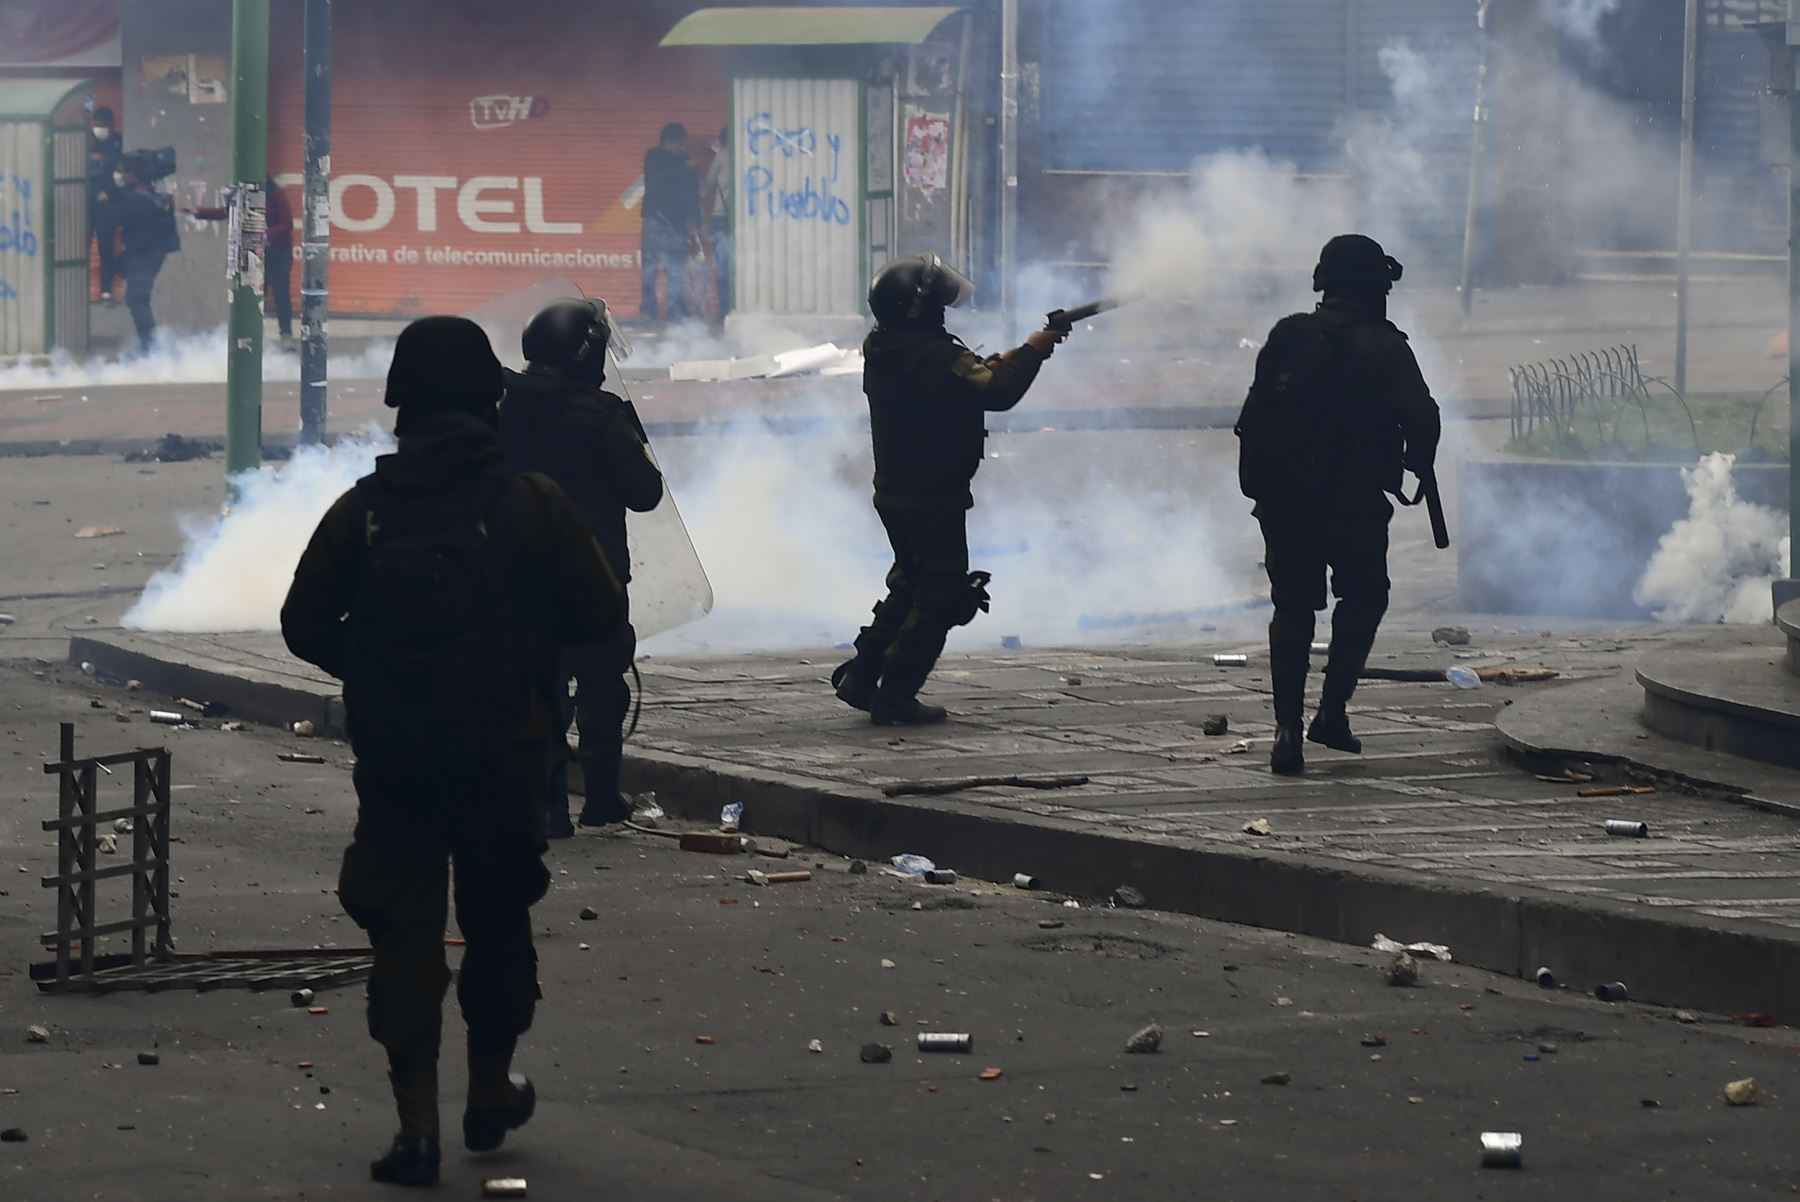 La policía antidisturbios disparó gases lacrimógenos para dispersar a los partidarios del ex presidente boliviano Evo Morales y los descontentos con la situación política durante una protesta en La Paz.
Foto: AFP